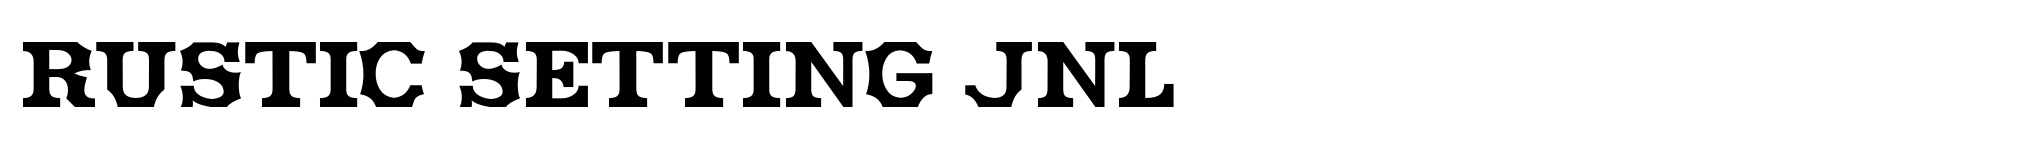 Rustic Setting JNL image